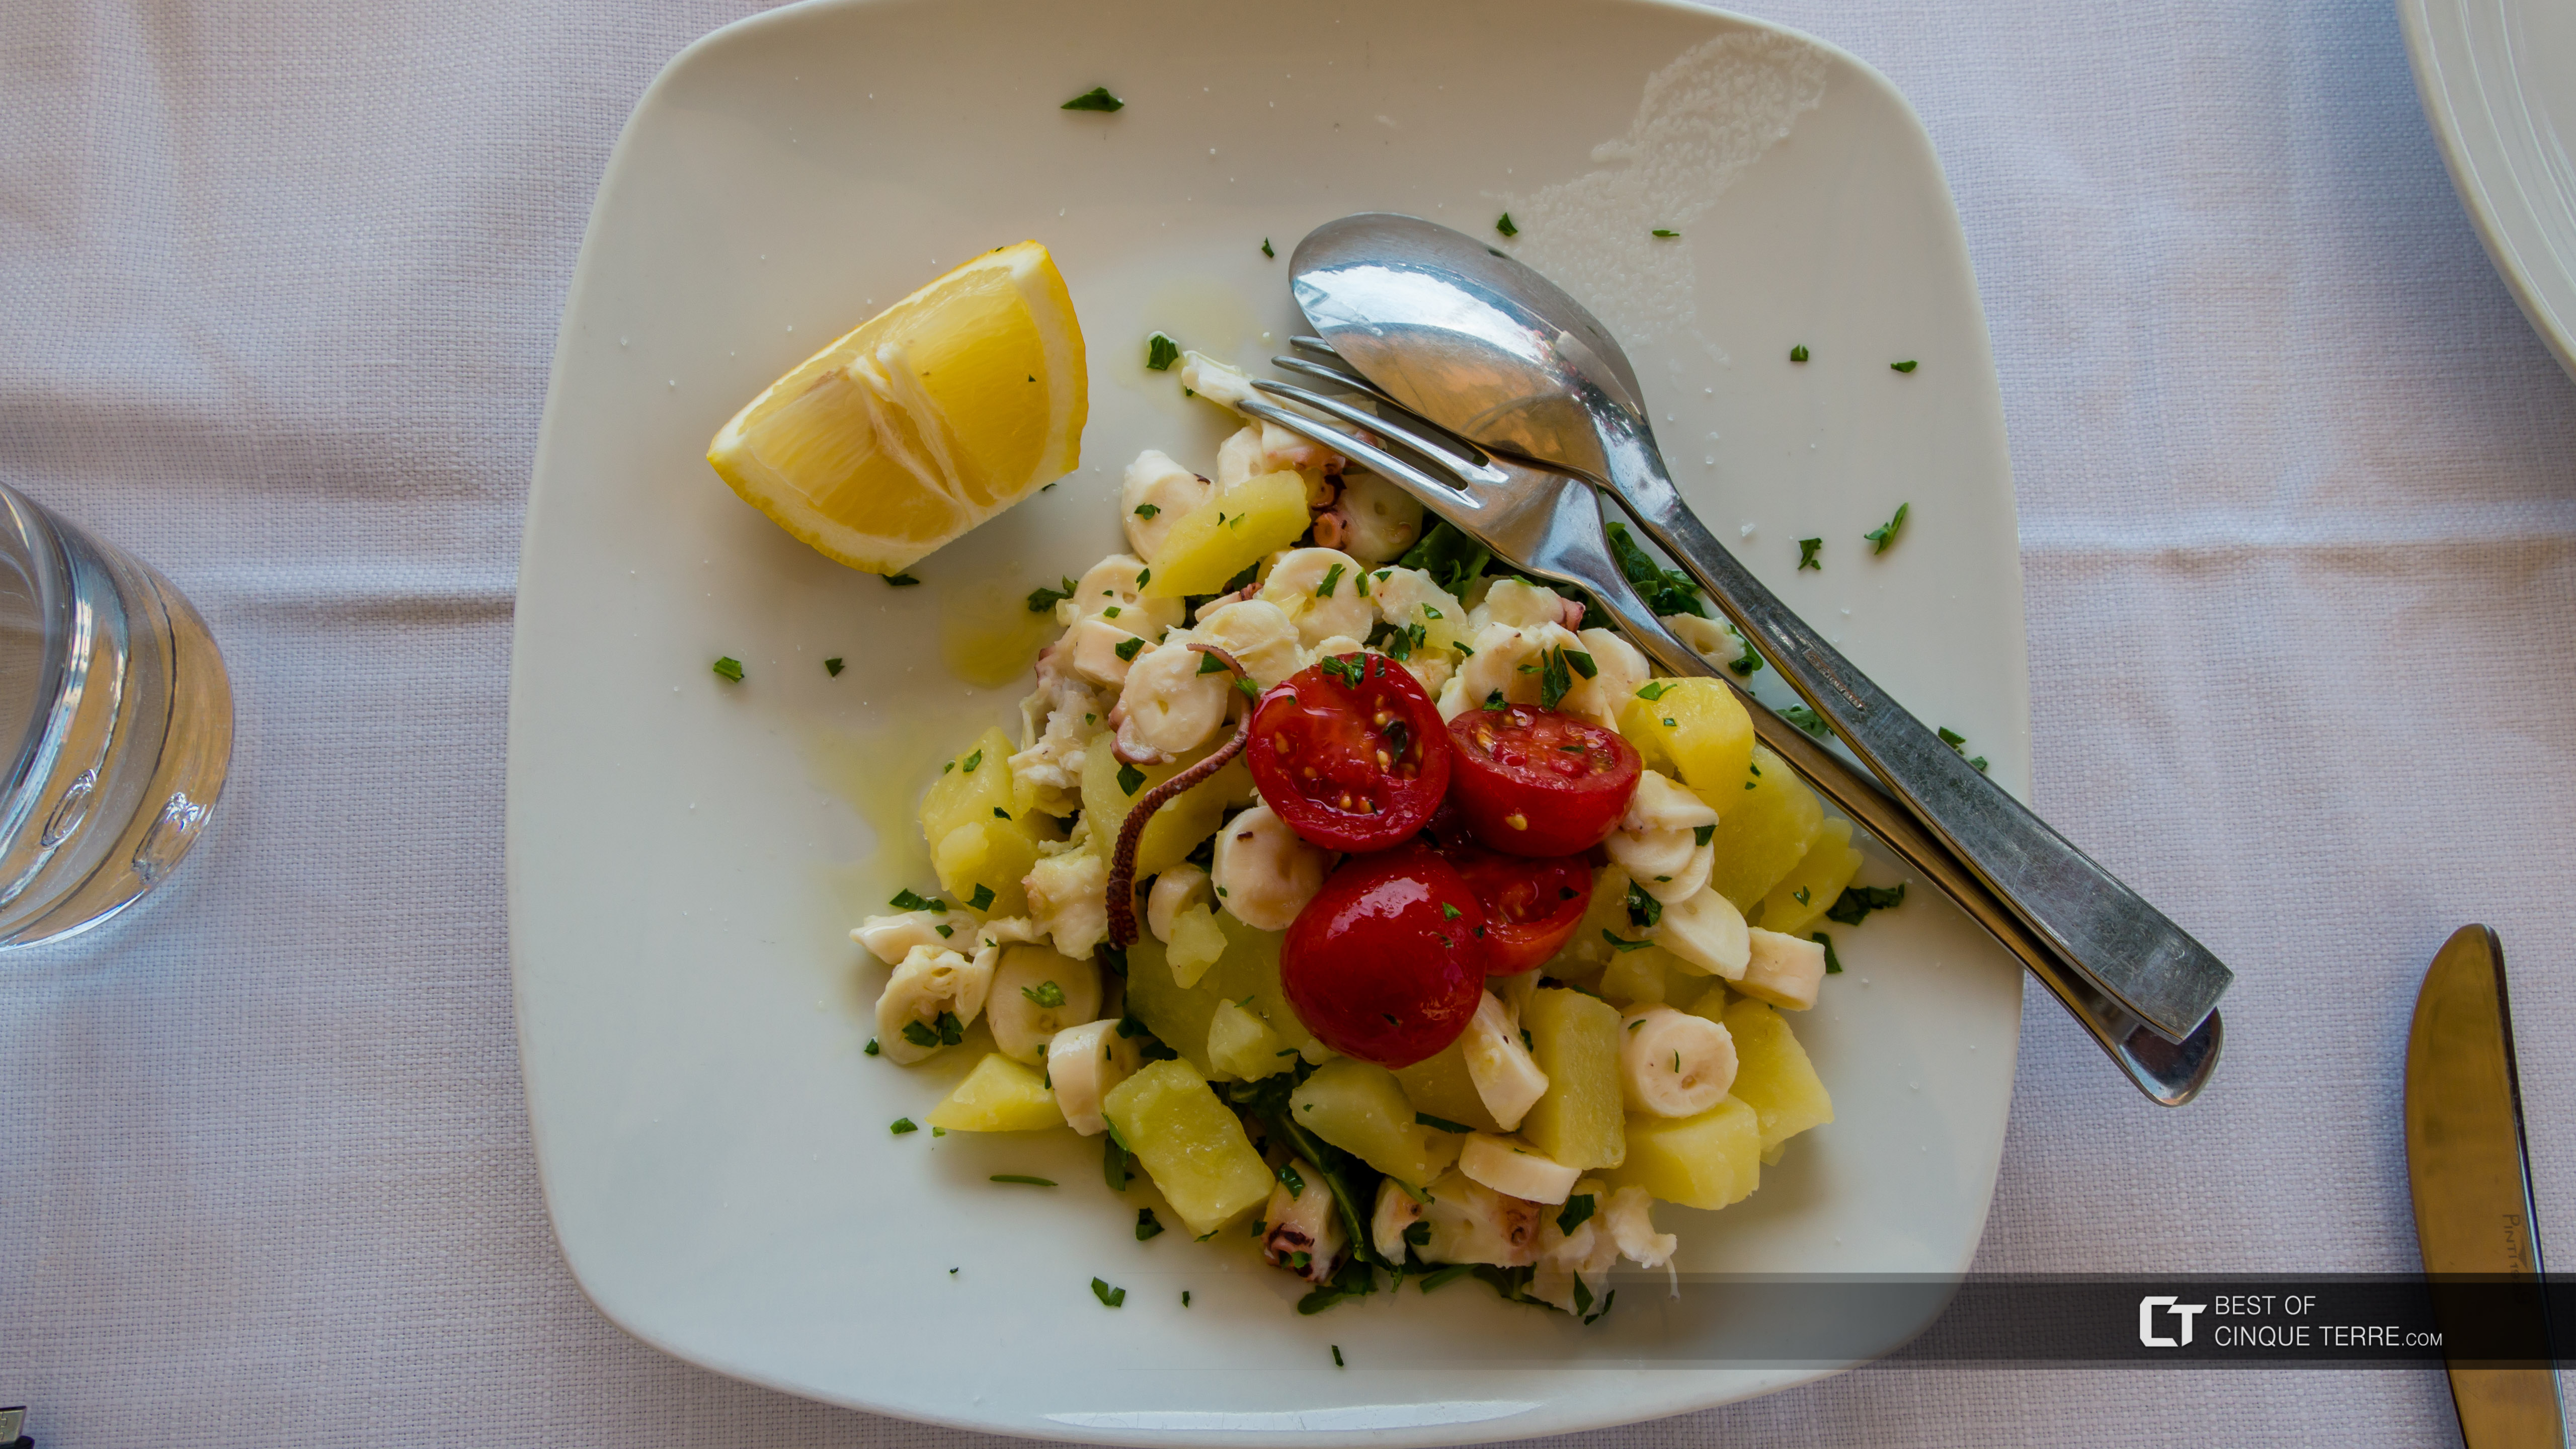 Tintenfischsalat mit Kartoffeln auf ligurische Art, Lokales Essen, Cinque Terre, Italien